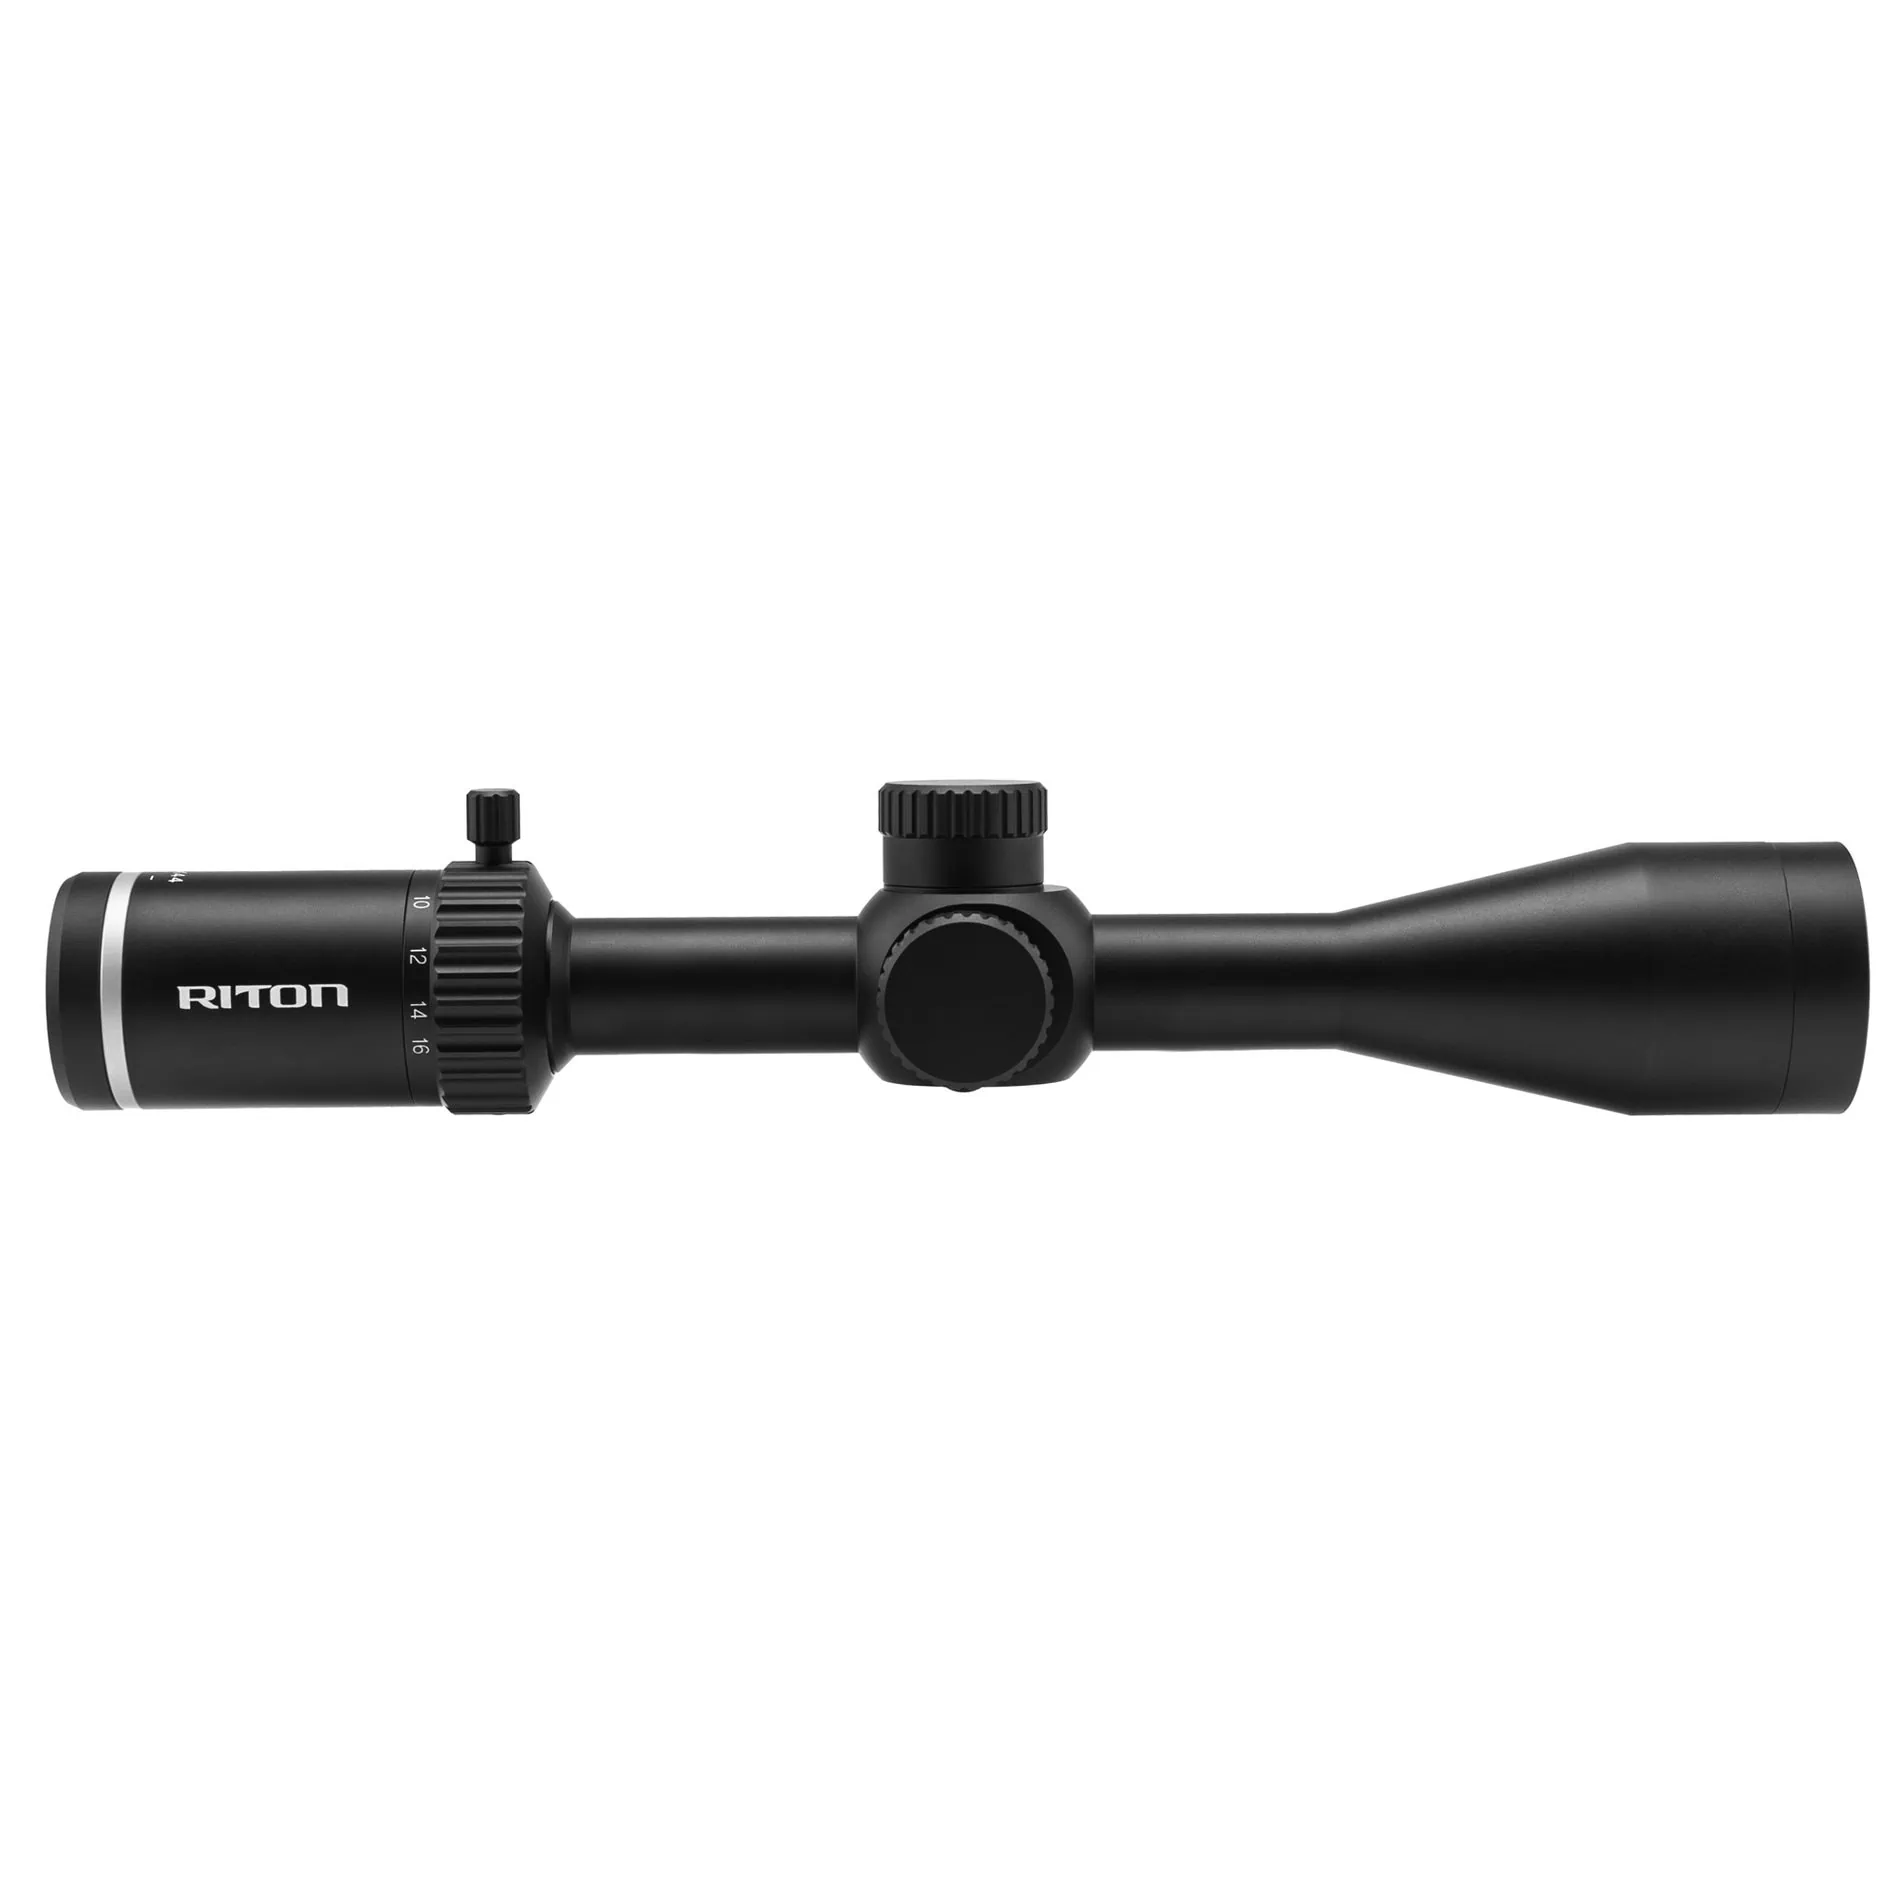 Riton Optics Primal 4-16x44 Illuminated Rifle Scope with DHR Reticle